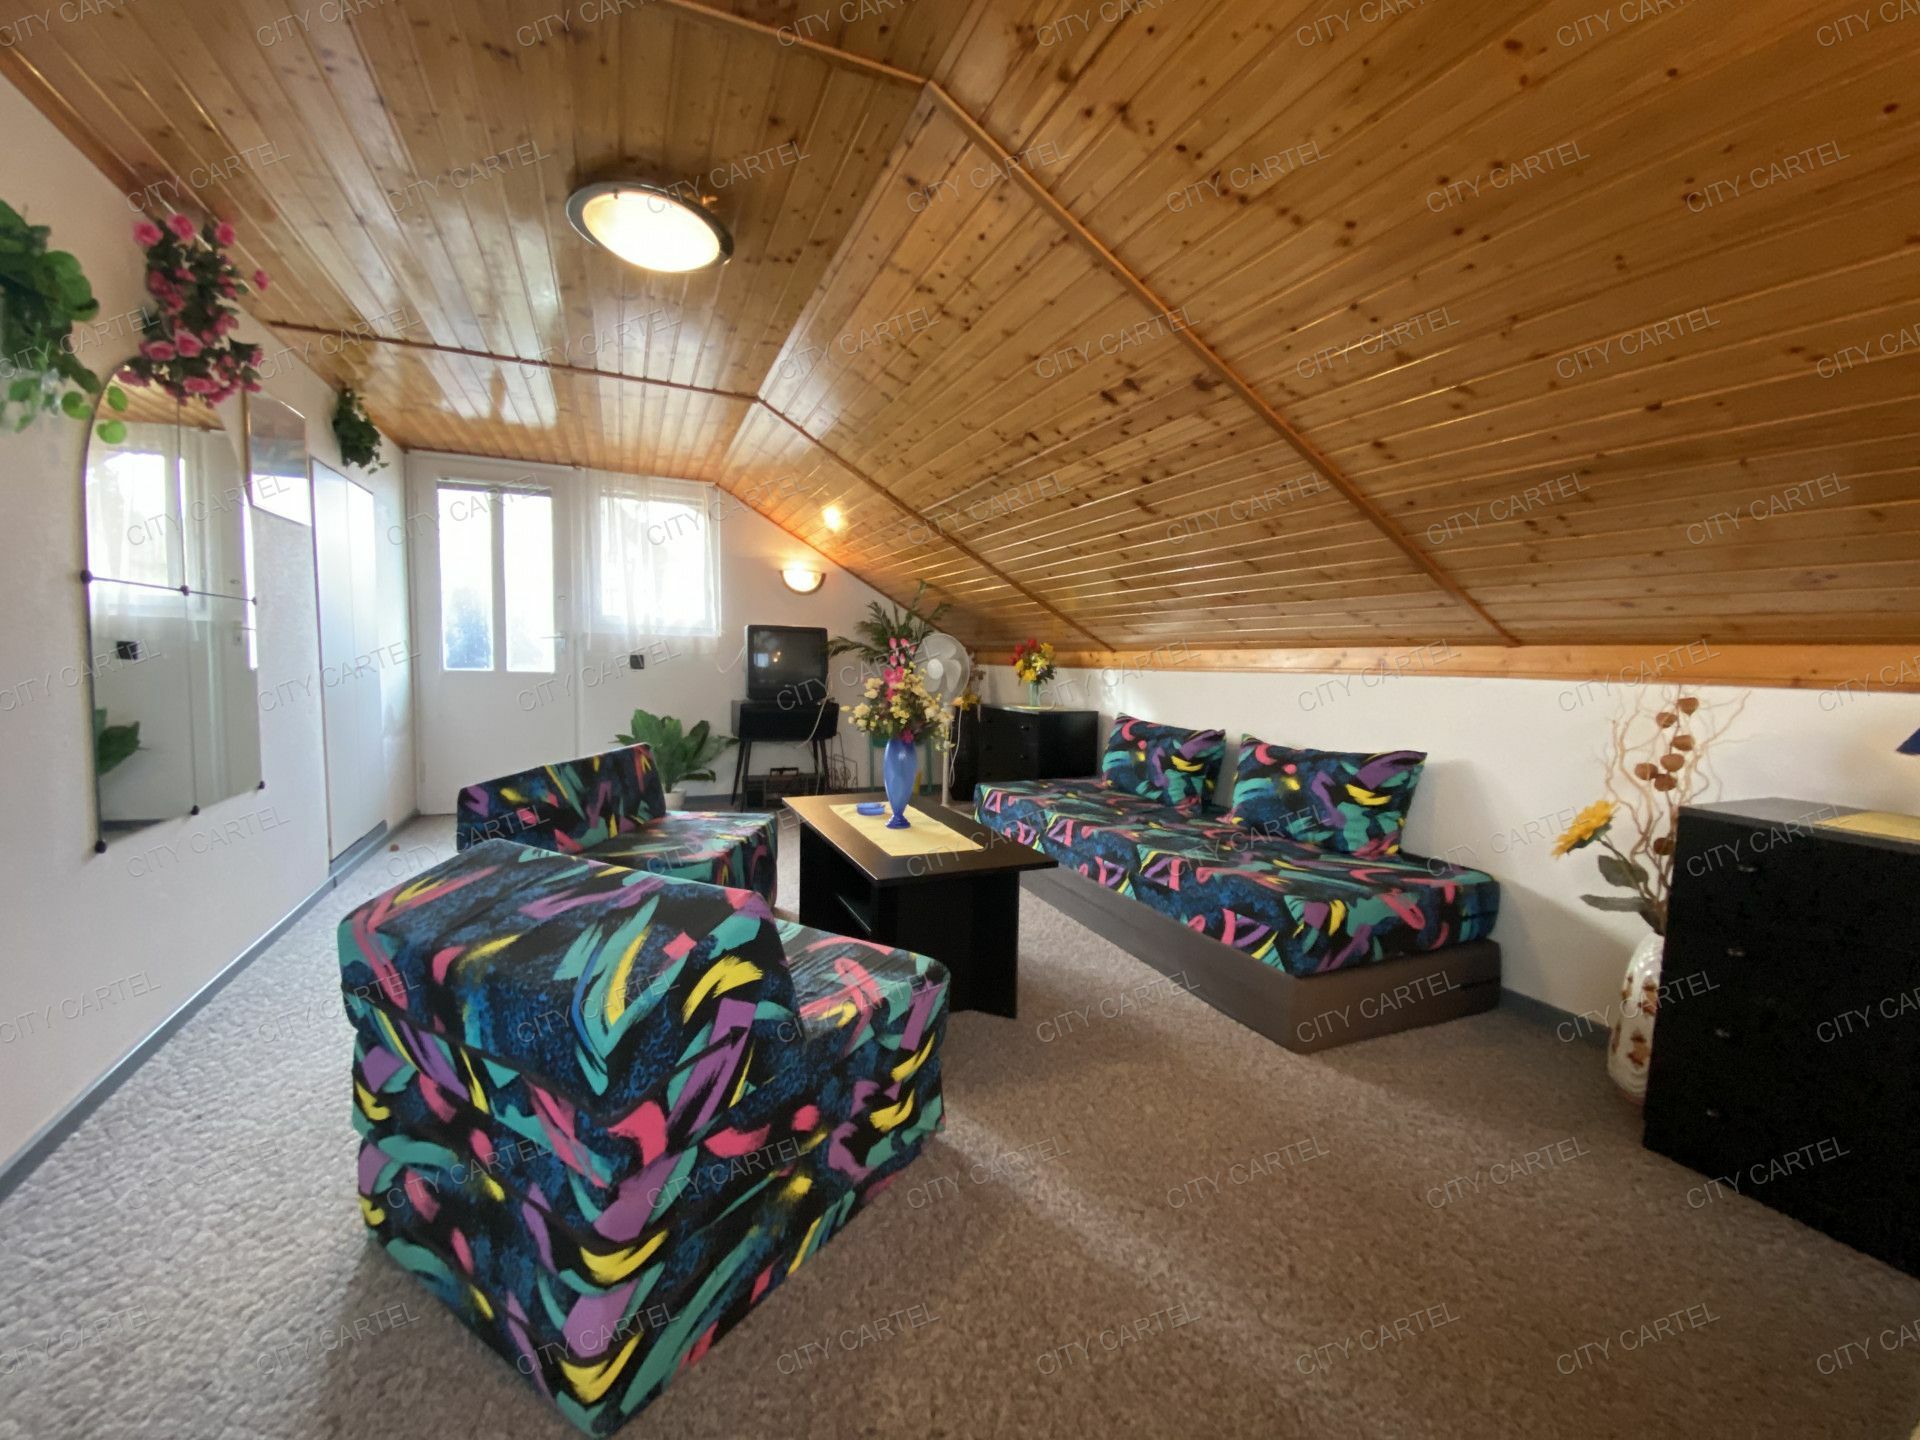 Albertirsán belső téreltolásos padlásteres egész évben lakható nyaraló